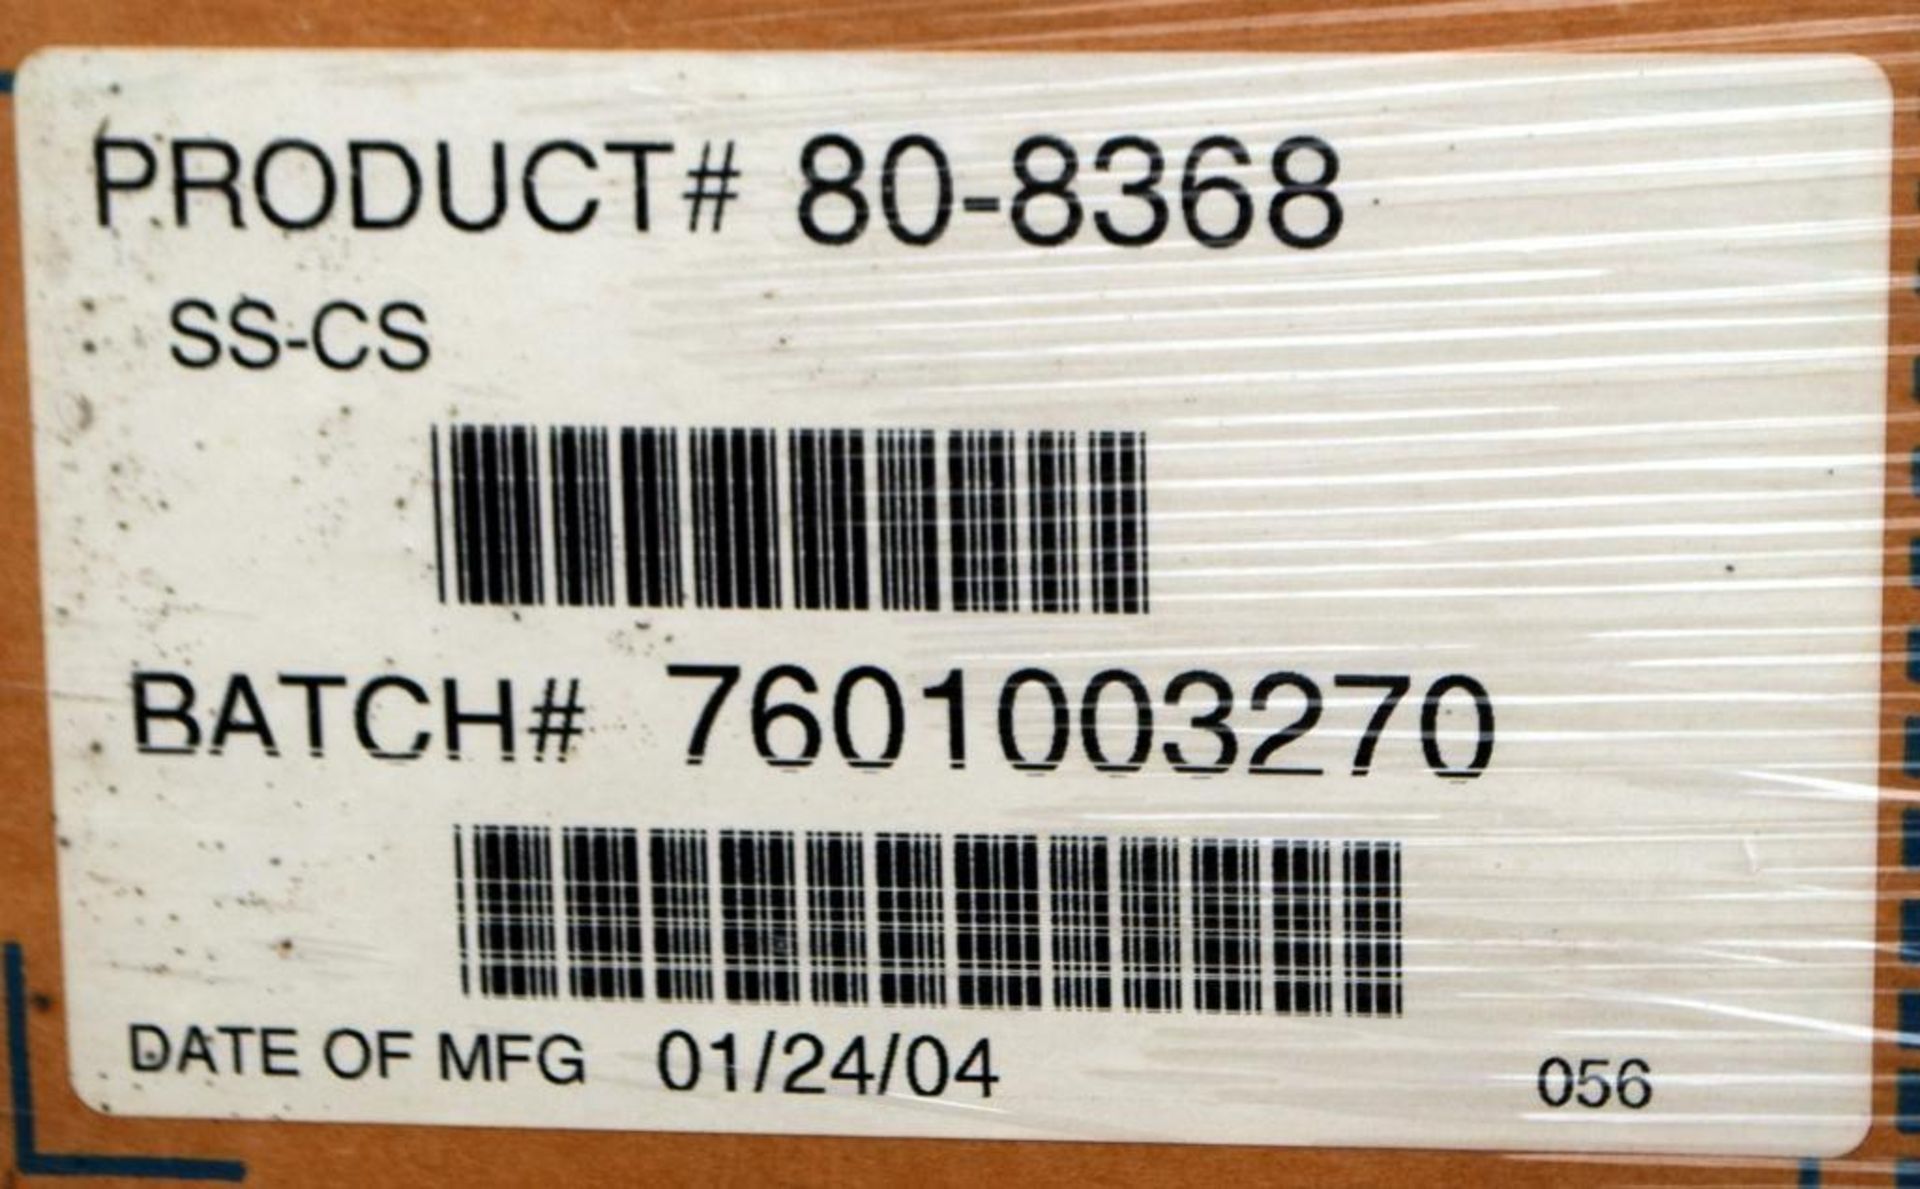 LOT: (60) Boxes of Henkel Technomelt Hot Melt Adhesive Model 80-8368 - Image 4 of 4